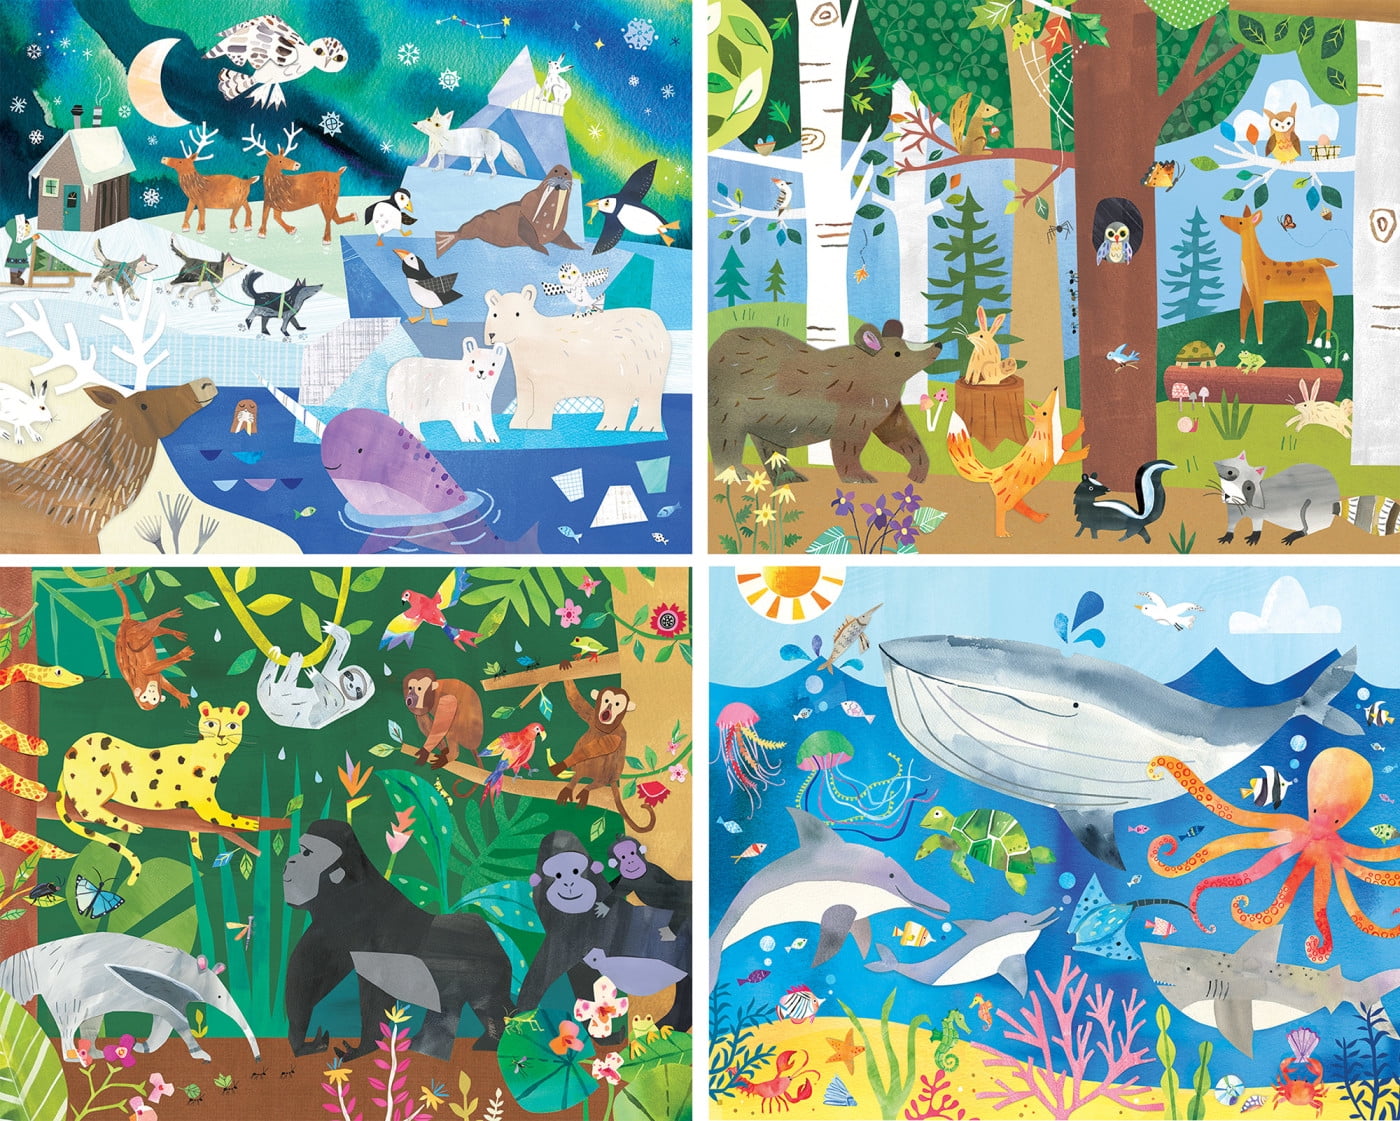 Hello World! Animals 4 Pack - 100 Piece Kids Puzzle